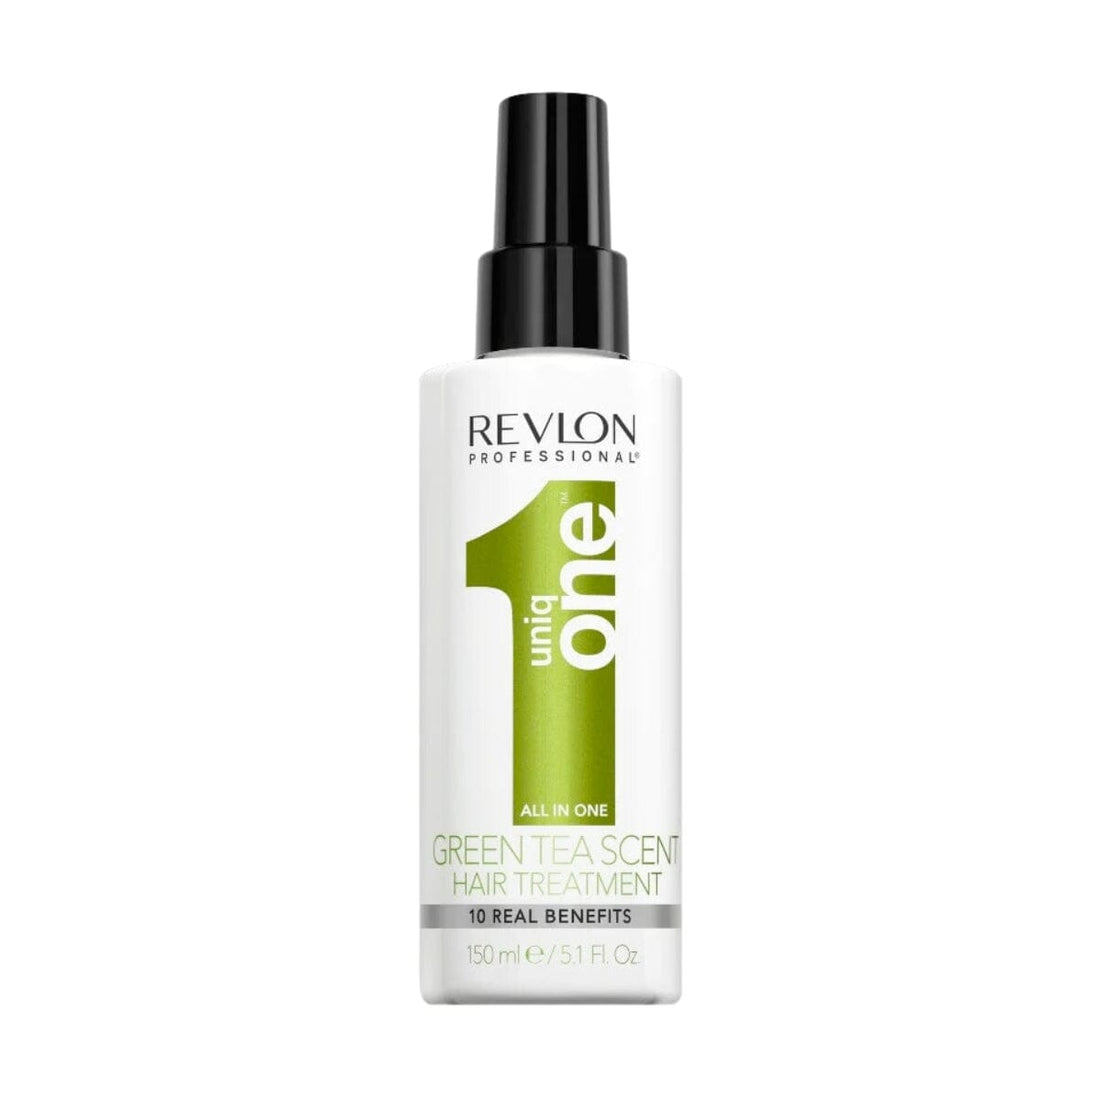 Revlon UniqOne Hair Treatment Green - Tea HairMNL 150ml HairMNL 